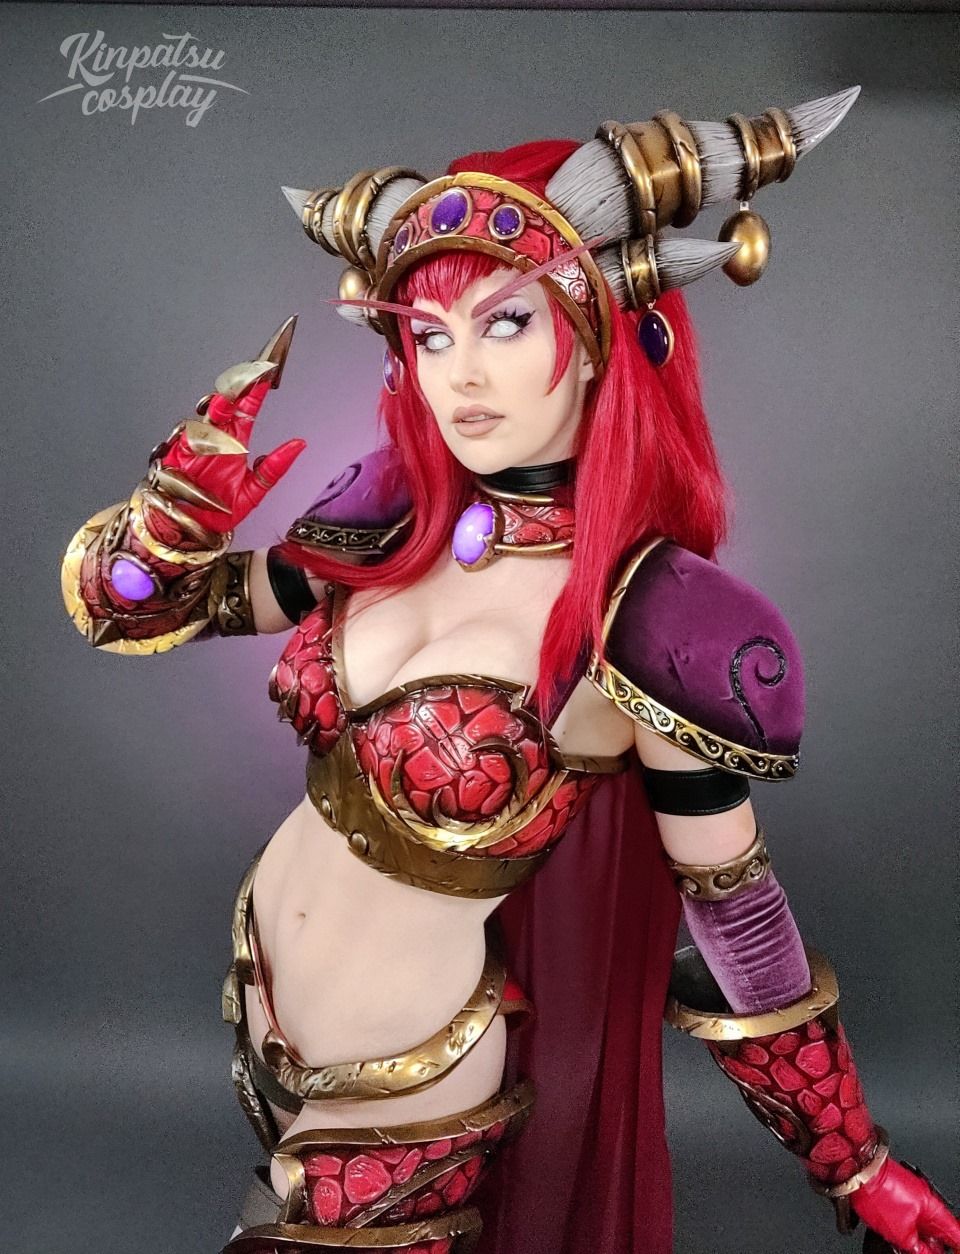 Алекстраза из World of Warcraft. Модель: Kinpatsu Cosplay. Источник: twitter.com/KinpatsuCosplay